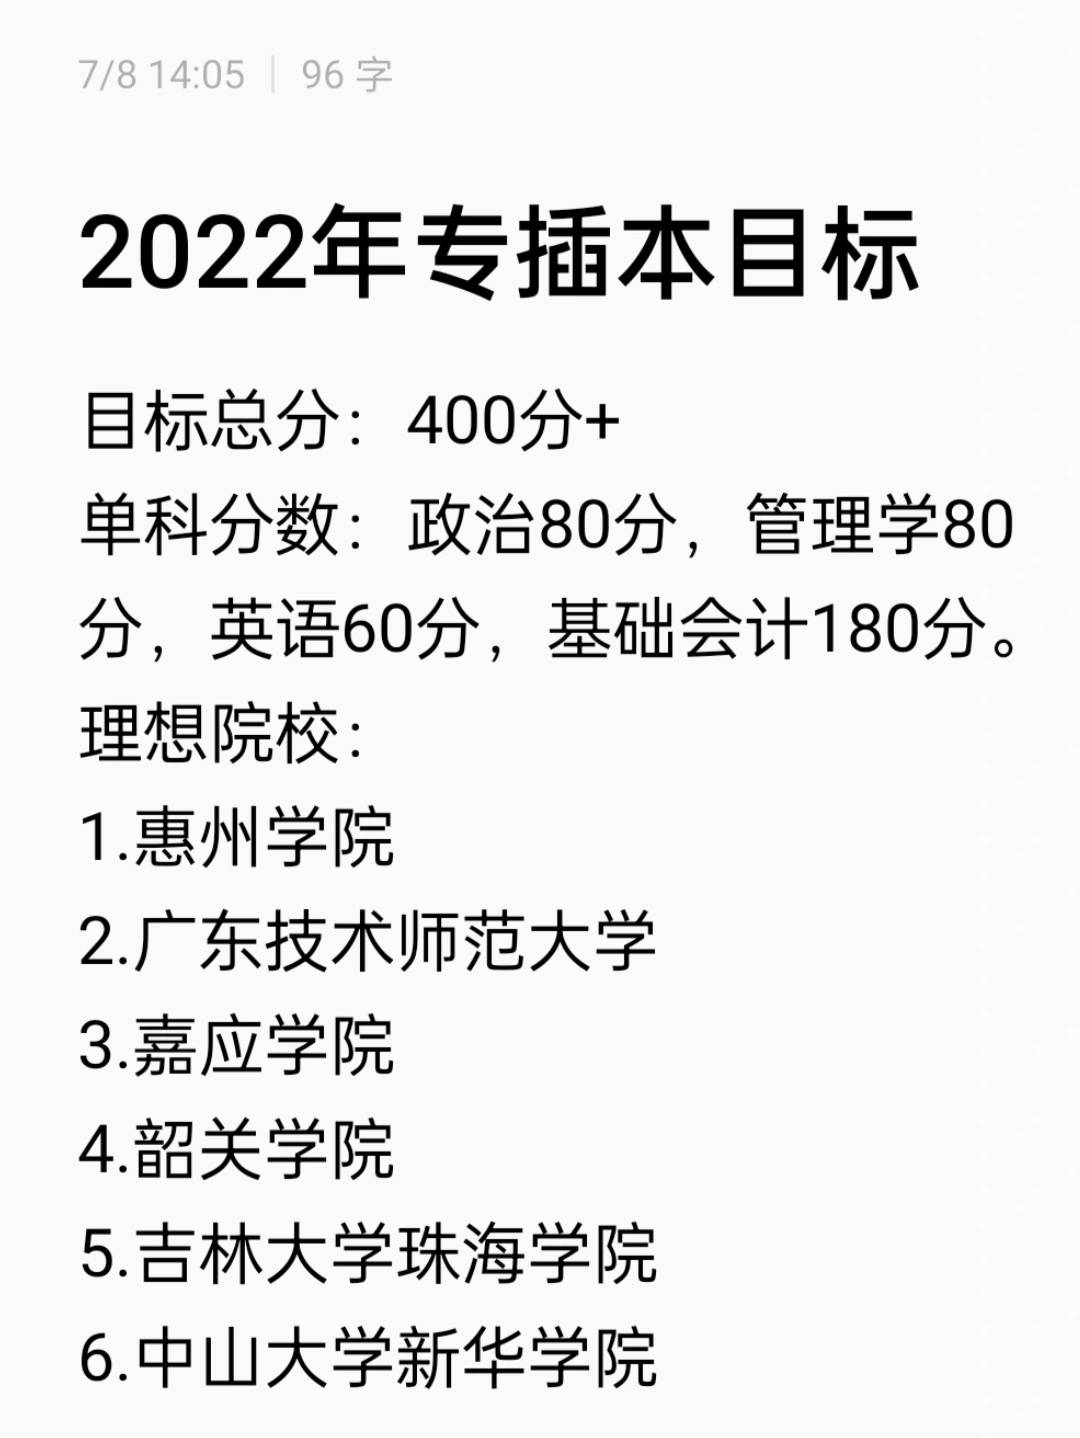 2022年专插本目标